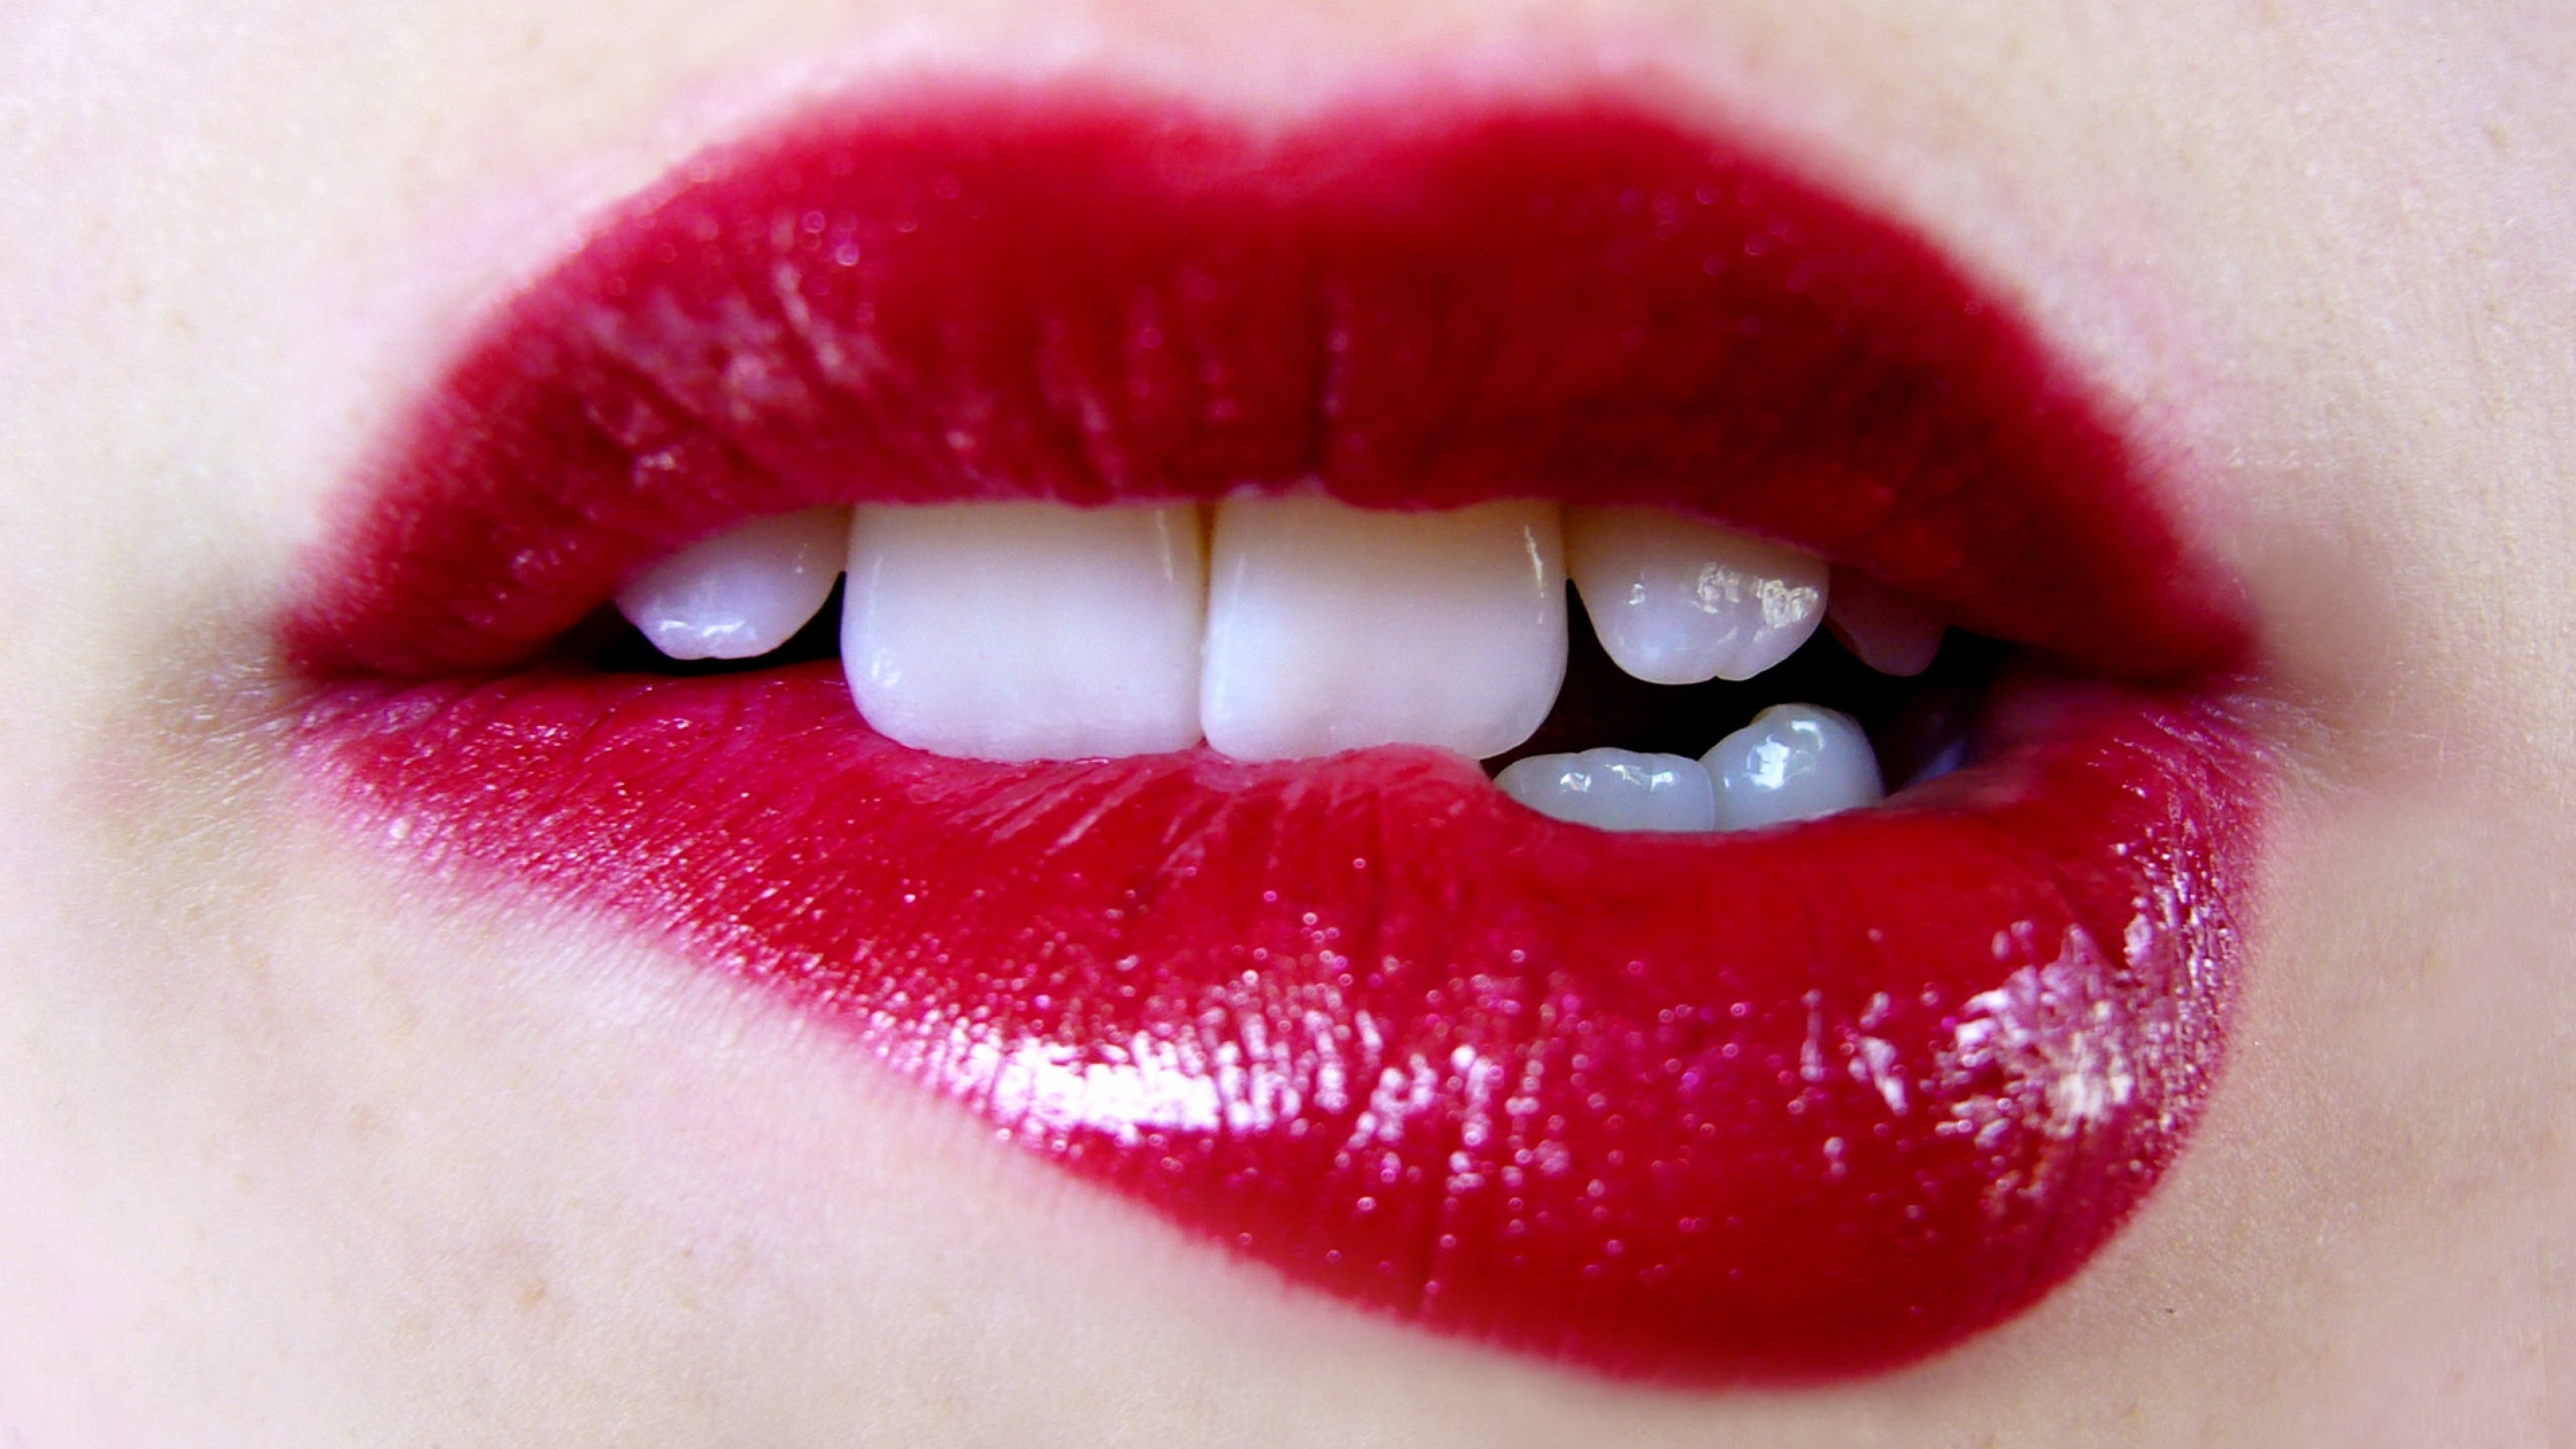 Вишня сладкая на губах твоих. Женские губы. Красивые губки. Красивые женские губы. Картинки губ.